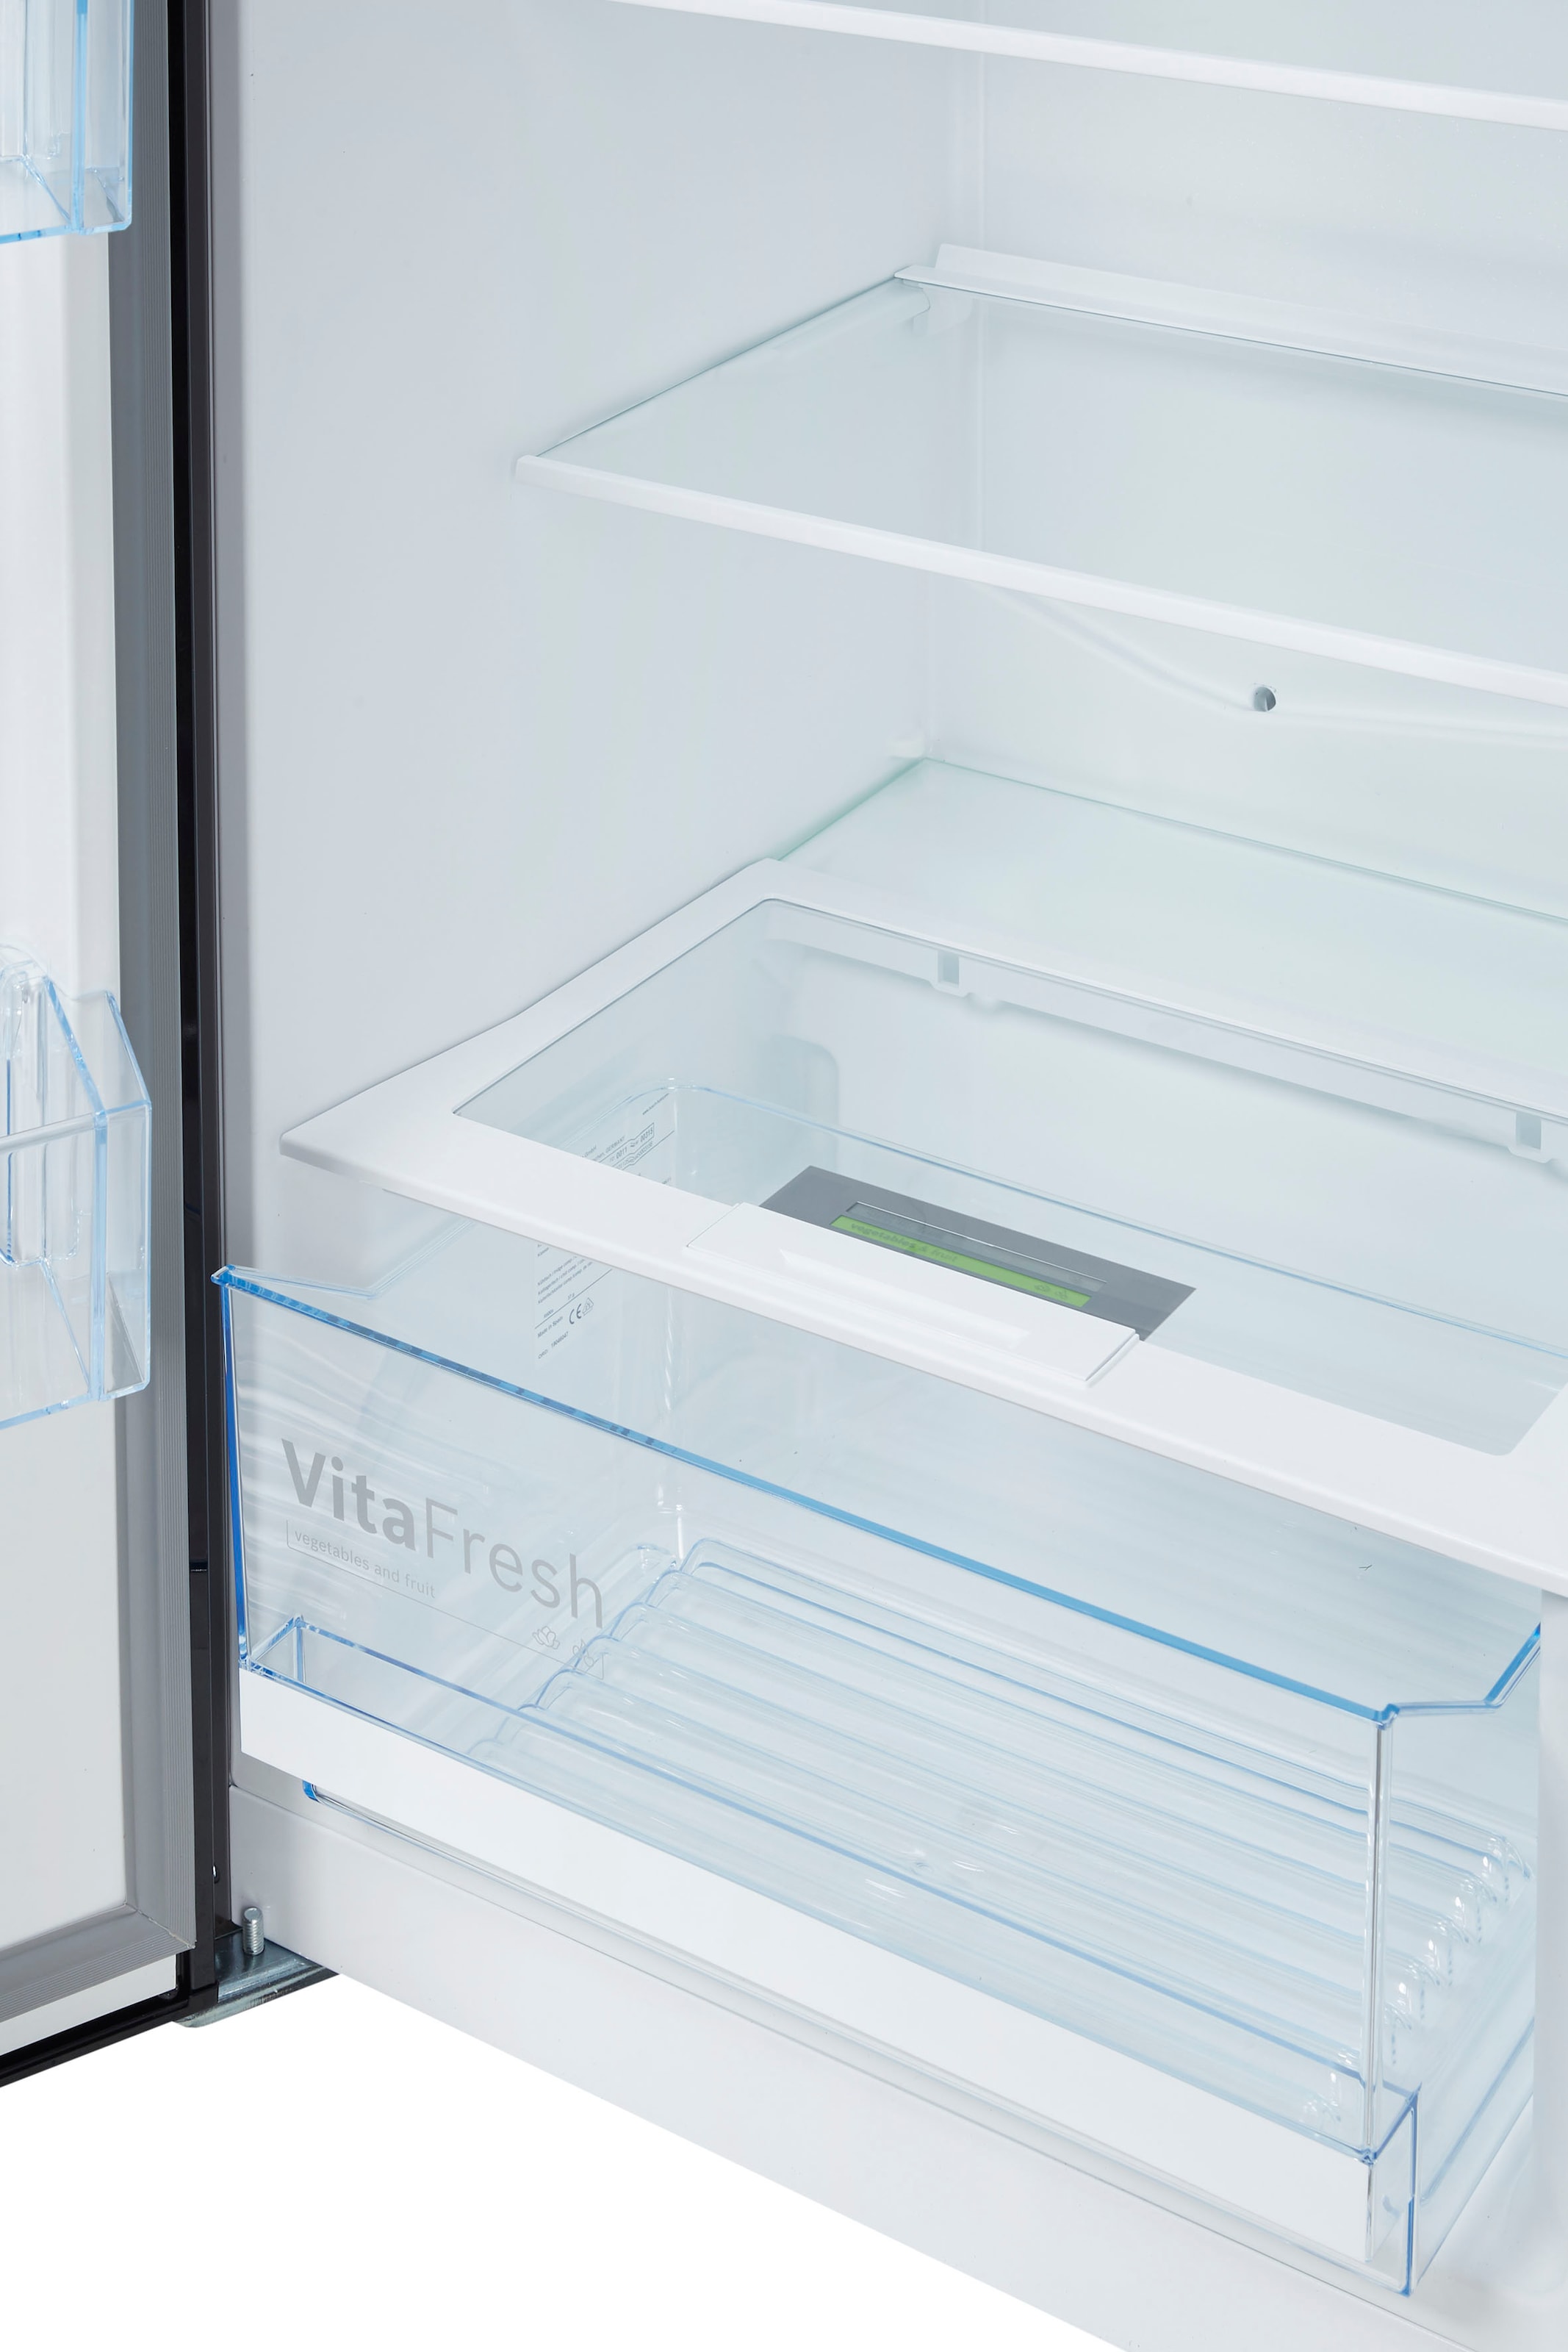 BOSCH Kühlschrank »KSV36VBEP«, KSV36VBEP, 186 cm hoch, 60 cm breit auf  Raten kaufen